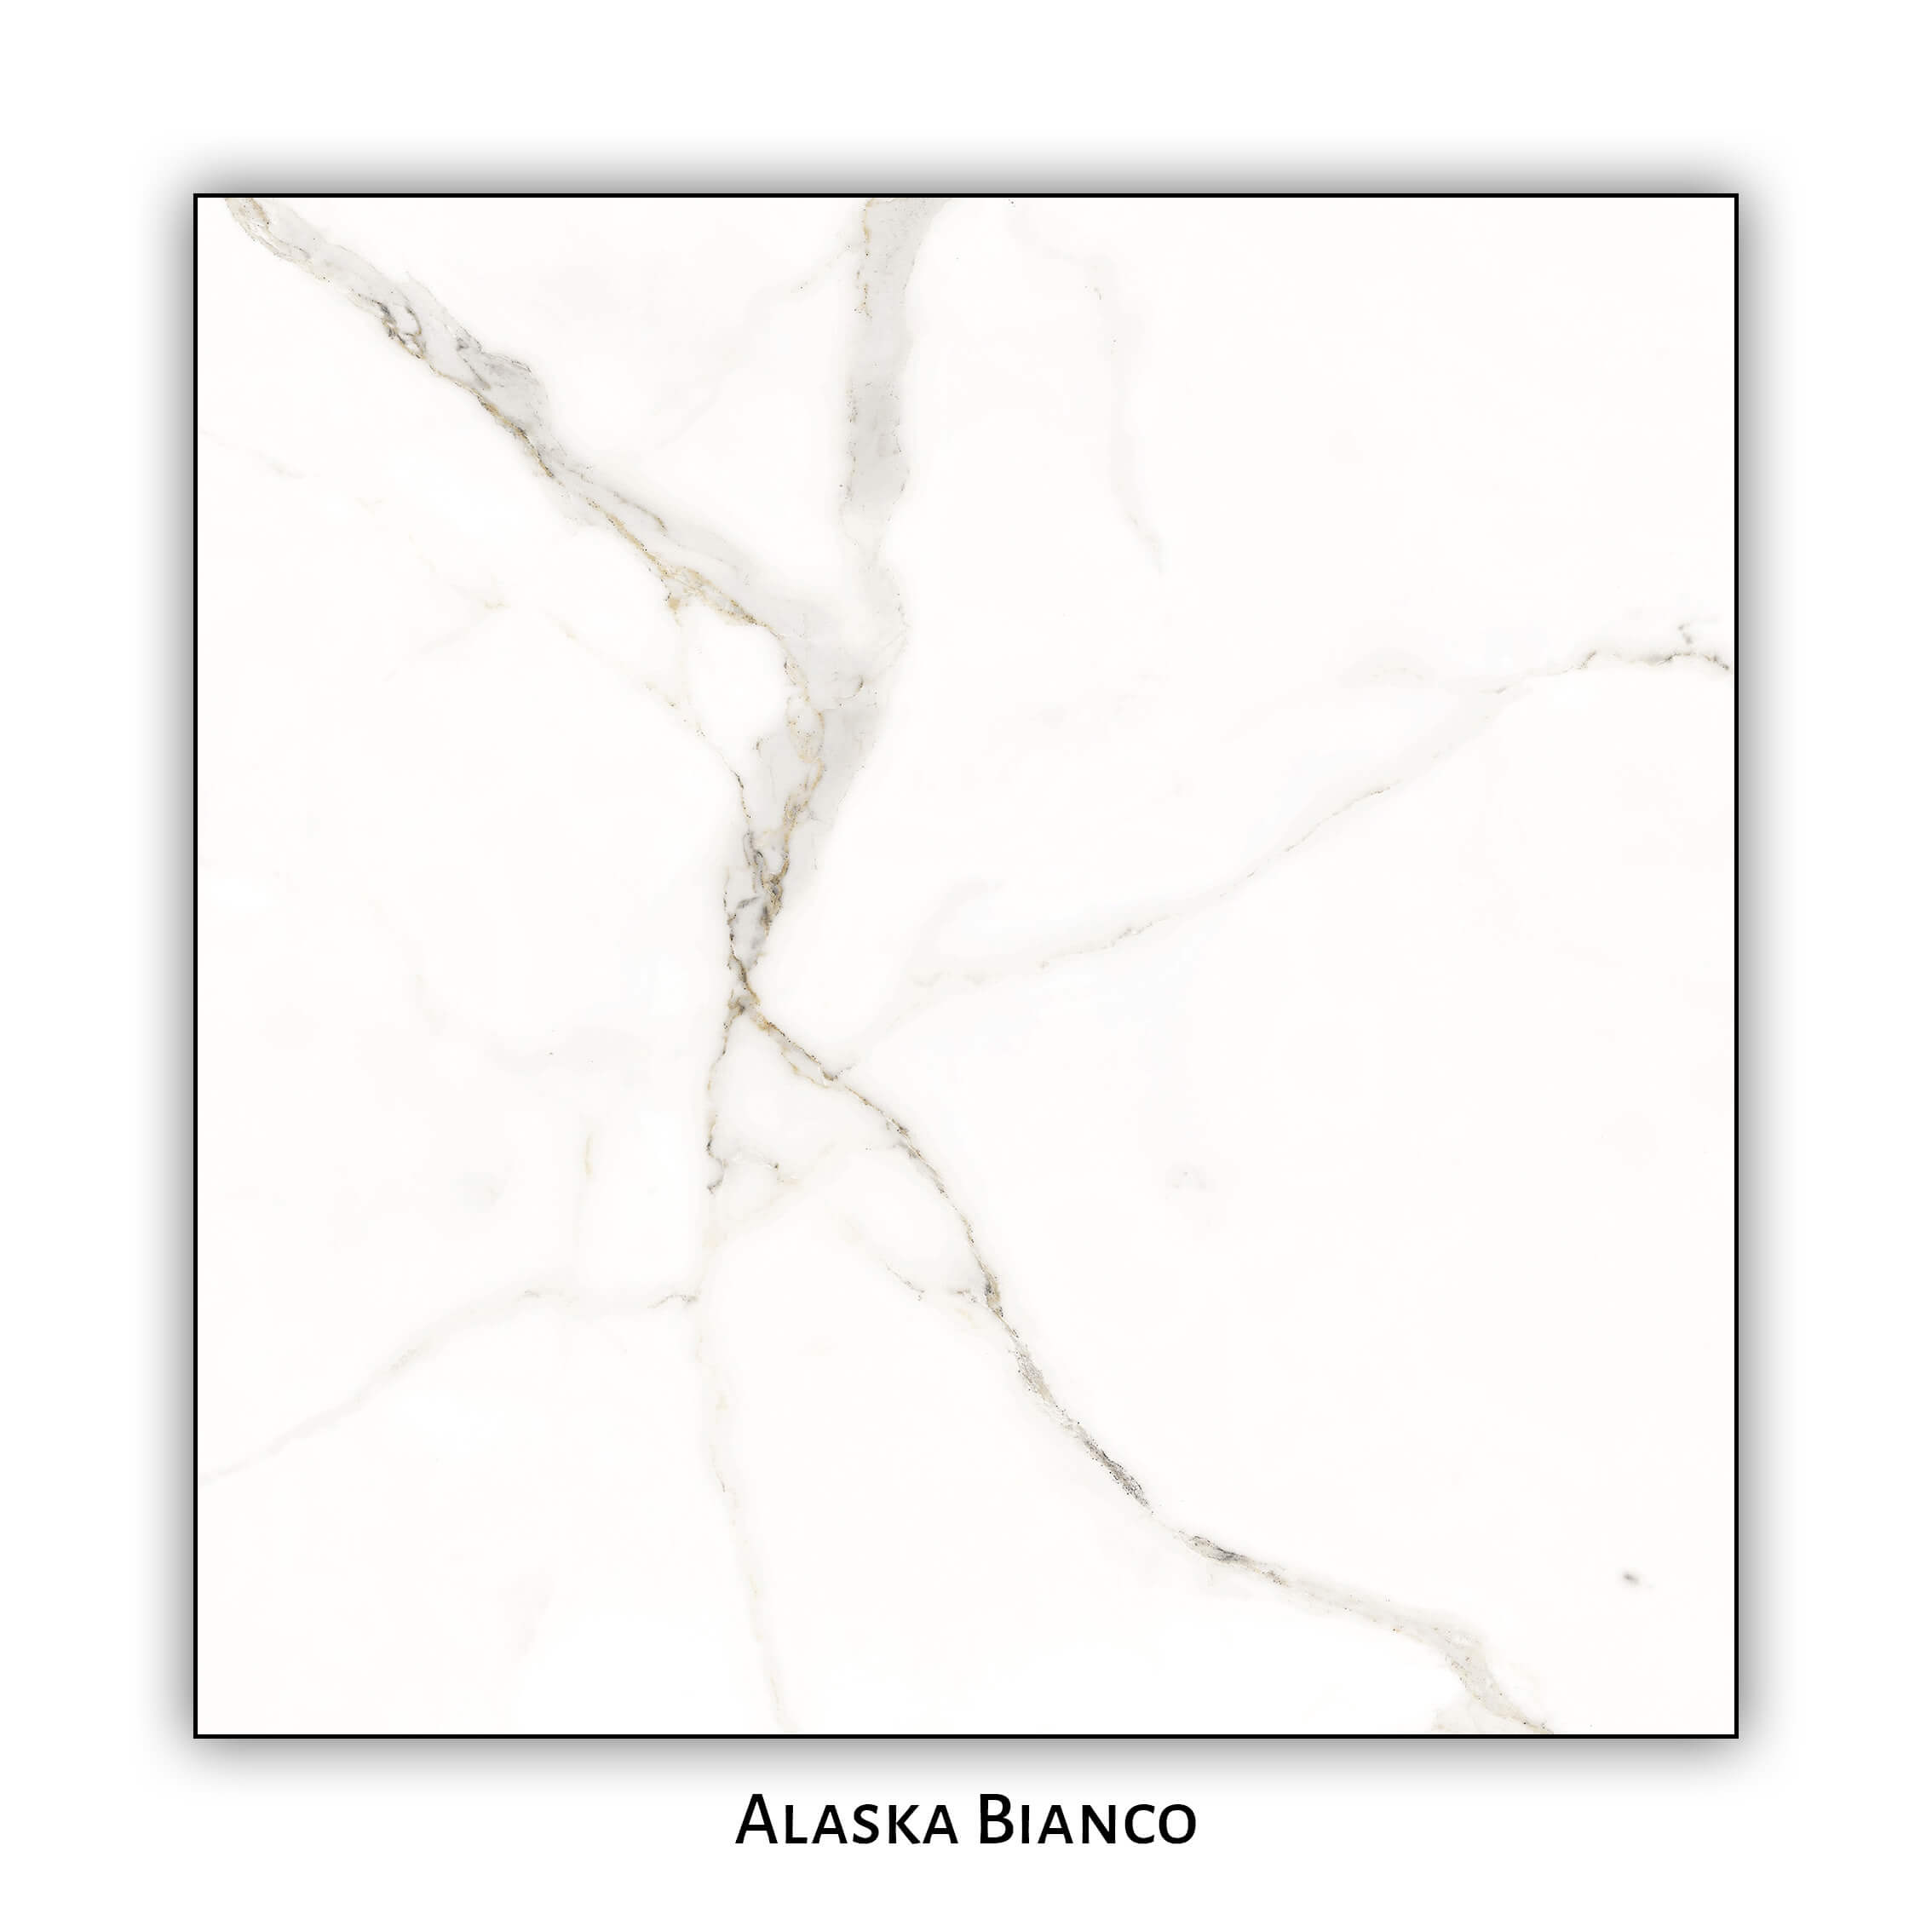 Alaska Bianco